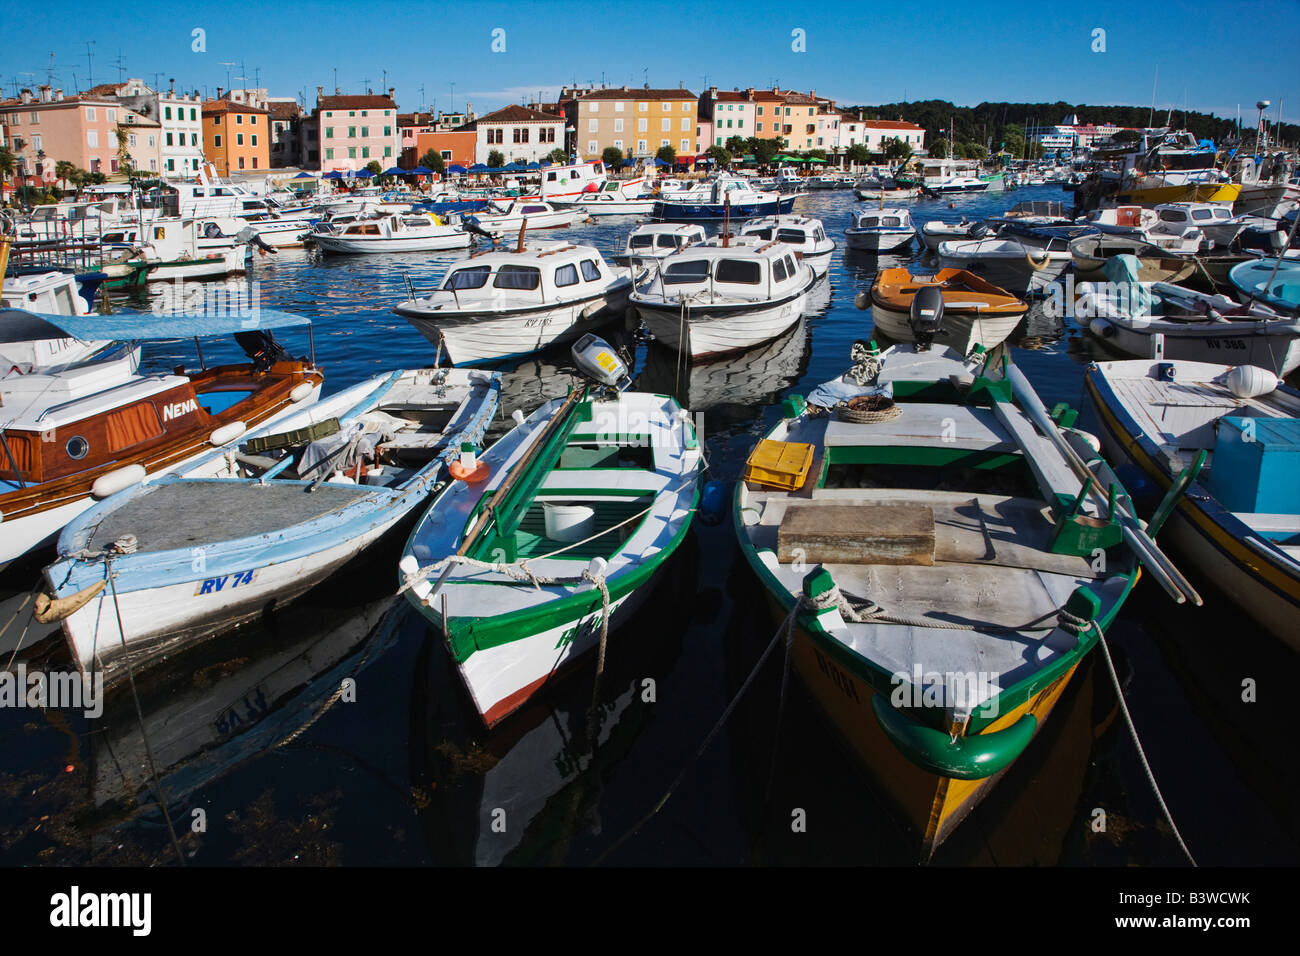 Boats docked in harbor, Rovigno, Croatia Stock Photo